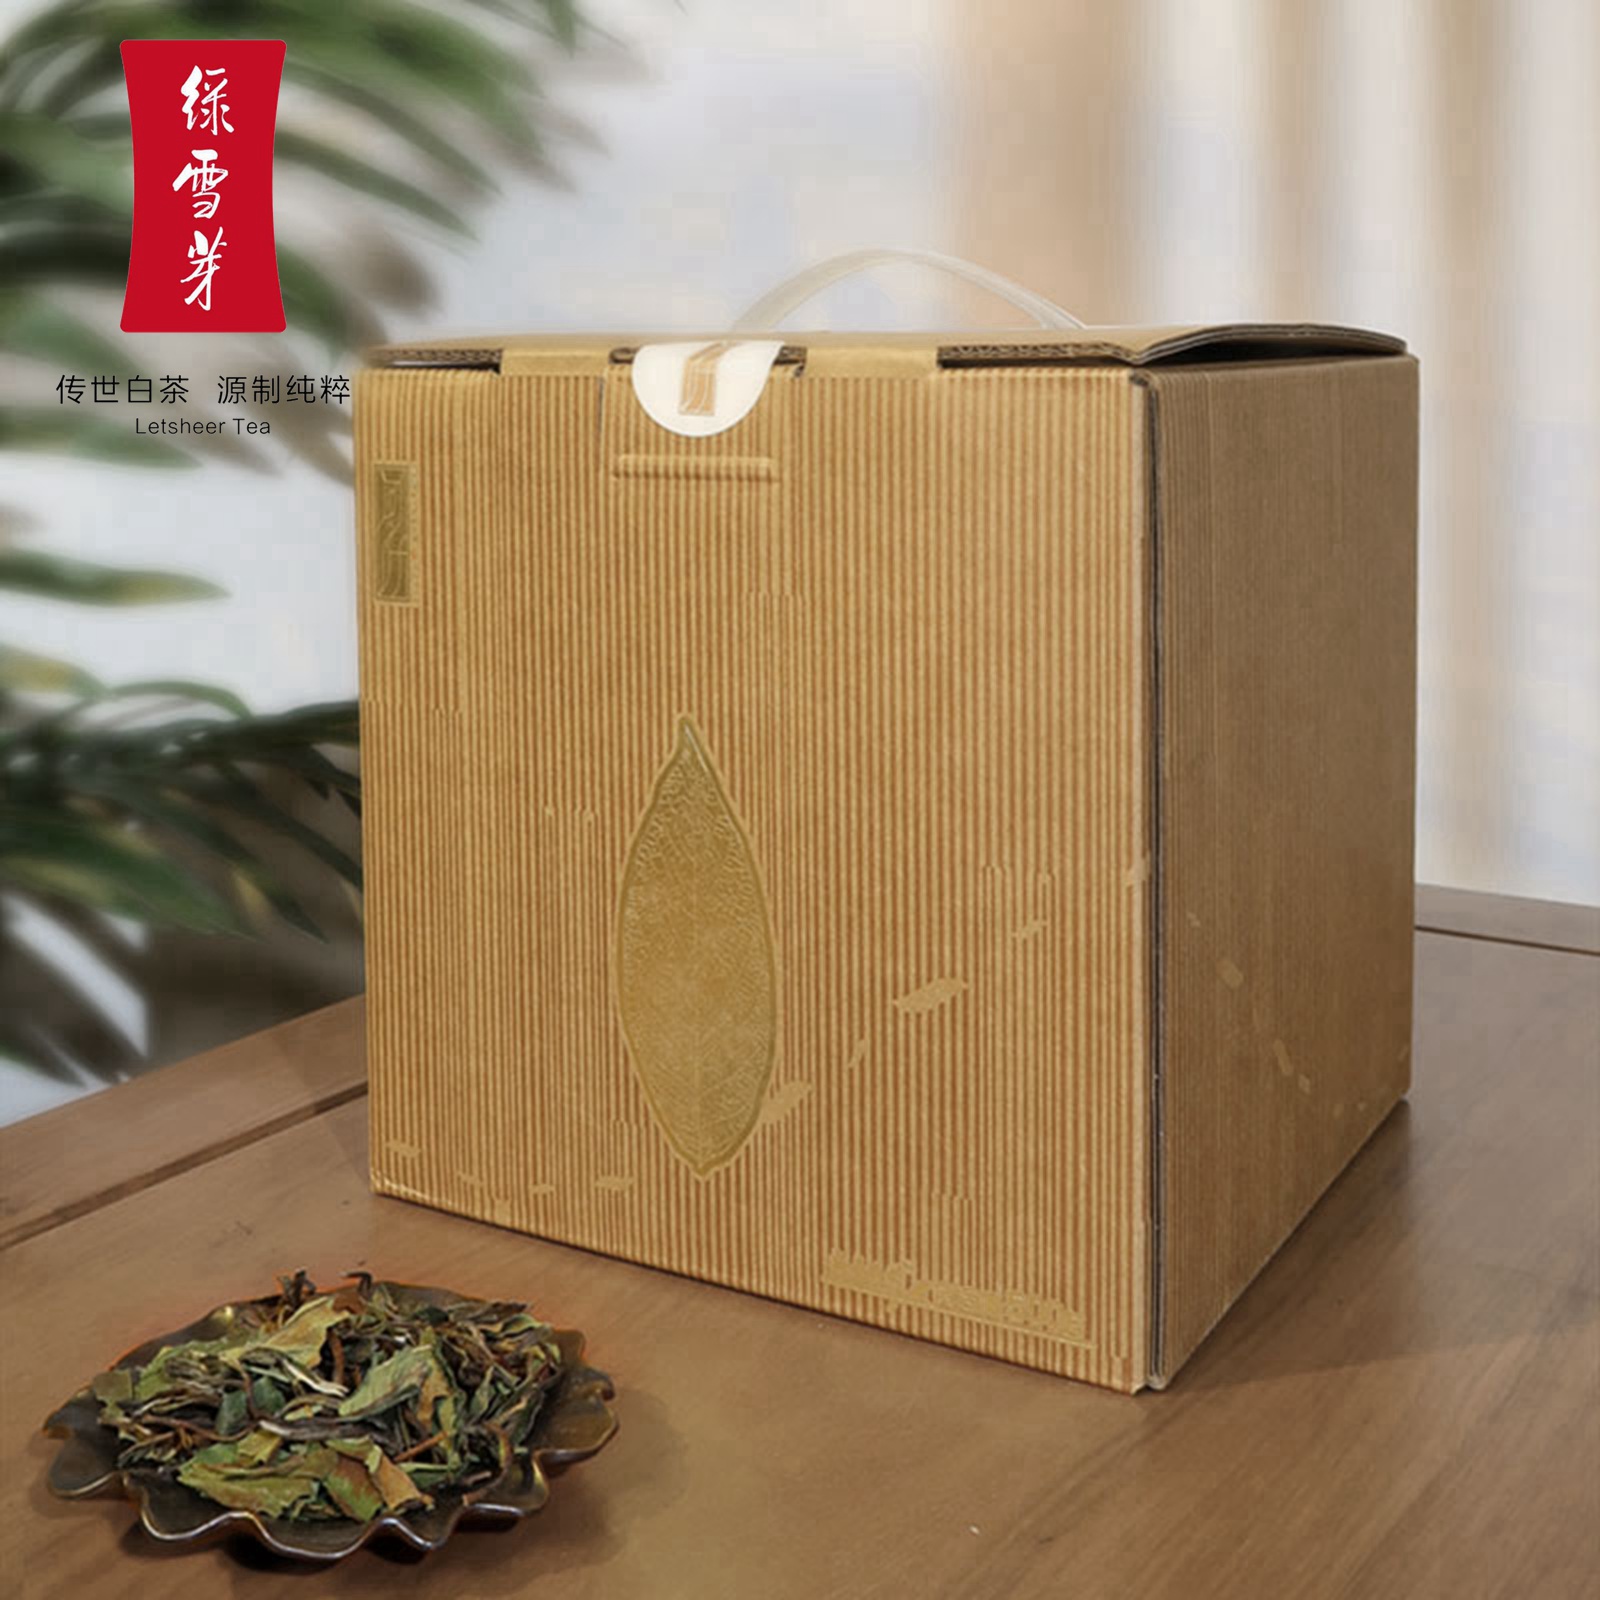 绿雪芽问叶福鼎白茶2022年新茶一级寿眉散茶实惠收藏1斤礼盒包装